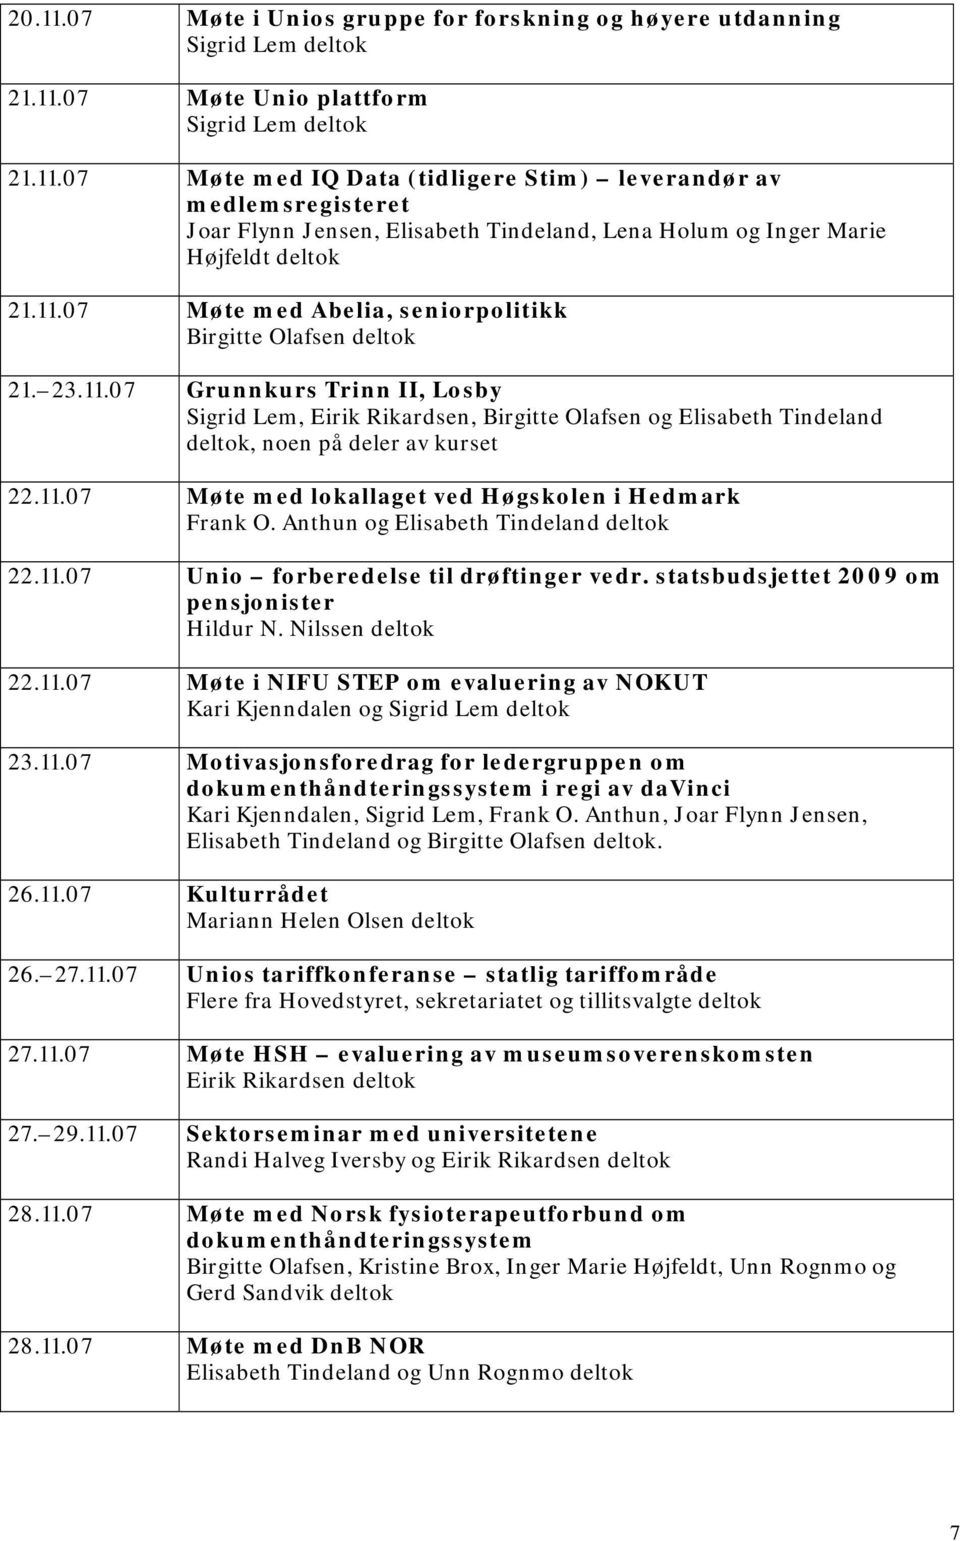 Anthun og Elisabeth Tindeland deltok 22.11.07 Unio forberedelse til drøftinger vedr. statsbudsjettet 2009 om pensjonister Hildur N. Nilssen deltok 22.11.07 Møte i NIFU STEP om evaluering av NOKUT Kari Kjenndalen og 23.